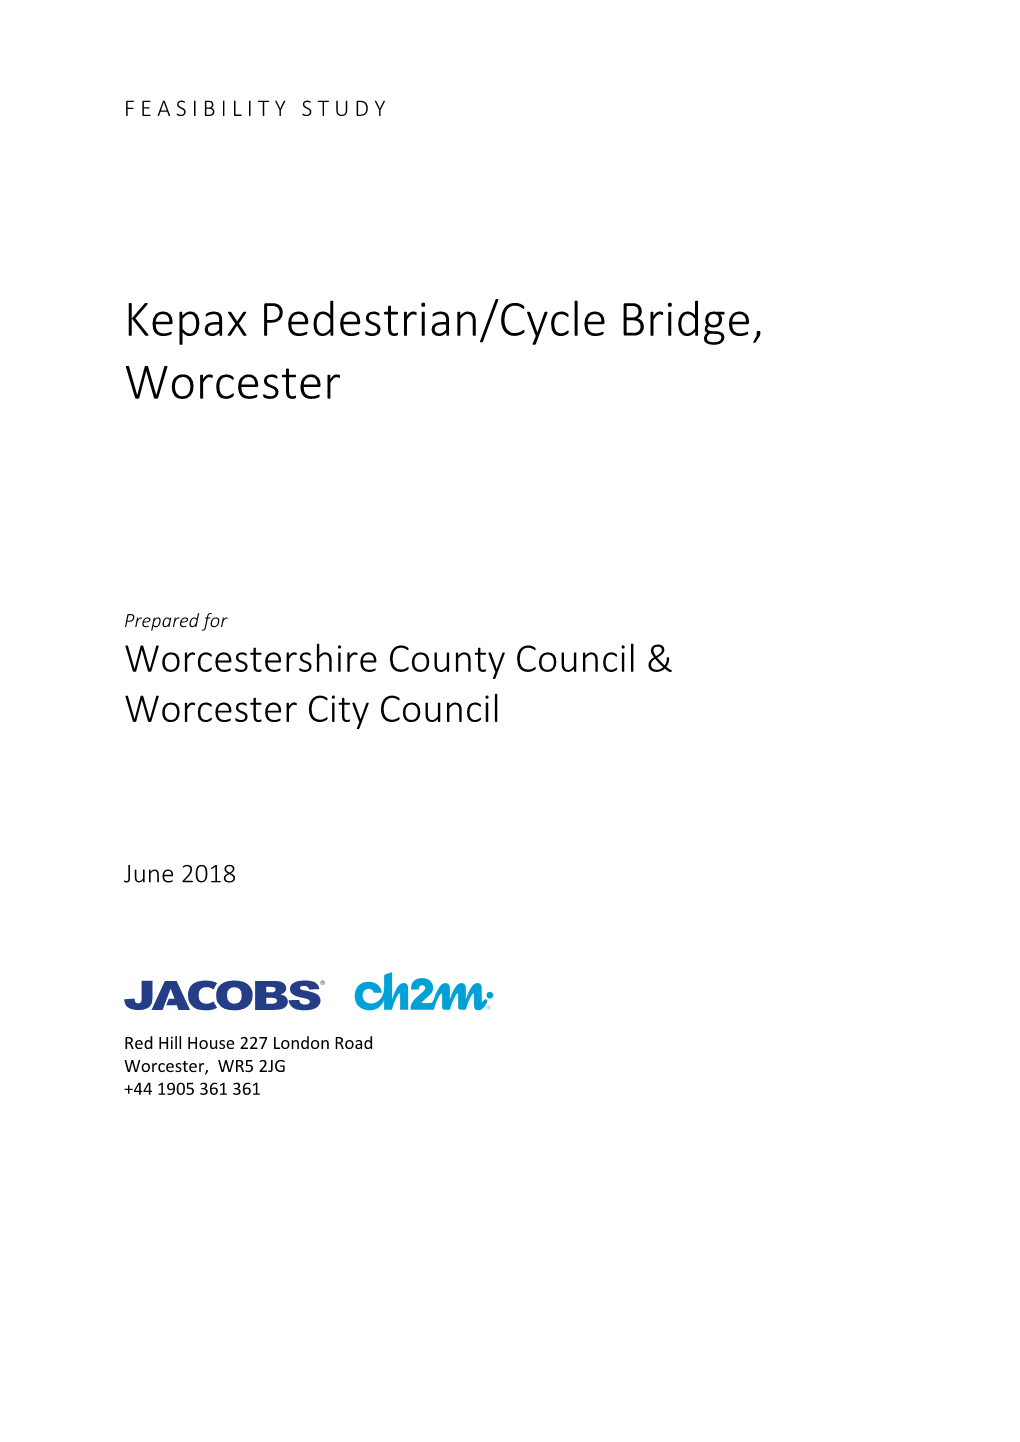 Kepax Pedestrian/Cycle Bridge, Worcester